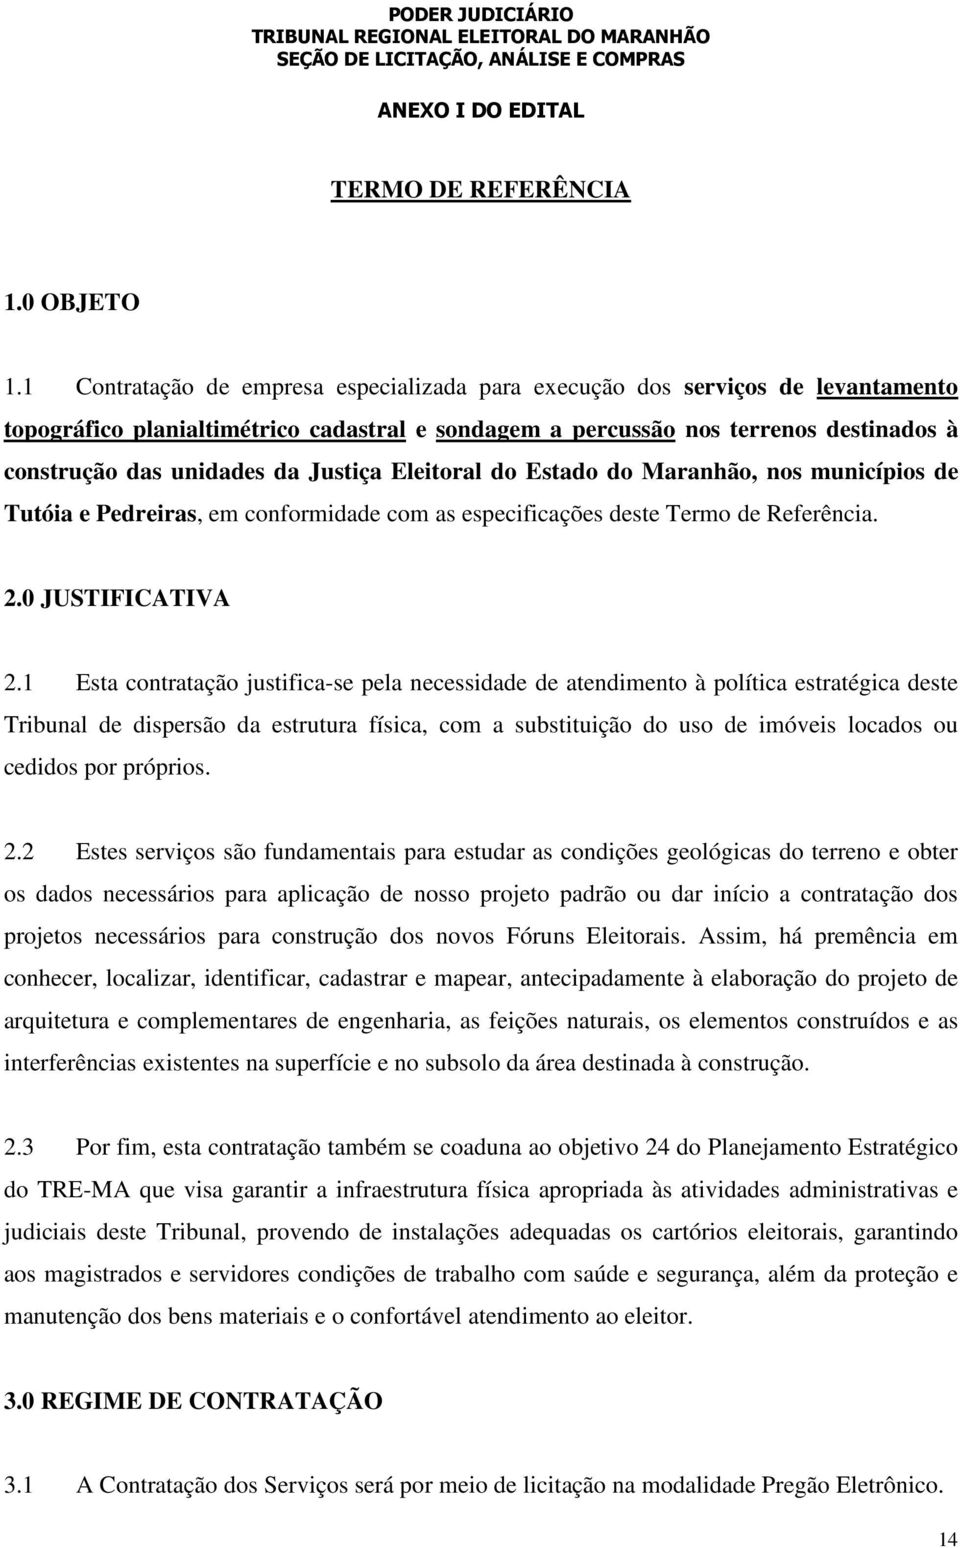 Justiça Eleitoral do Estado do Maranhão, nos municípios de Tutóia e Pedreiras, em conformidade com as especificações deste Termo de Referência. 2.0 JUSTIFICATIVA 2.